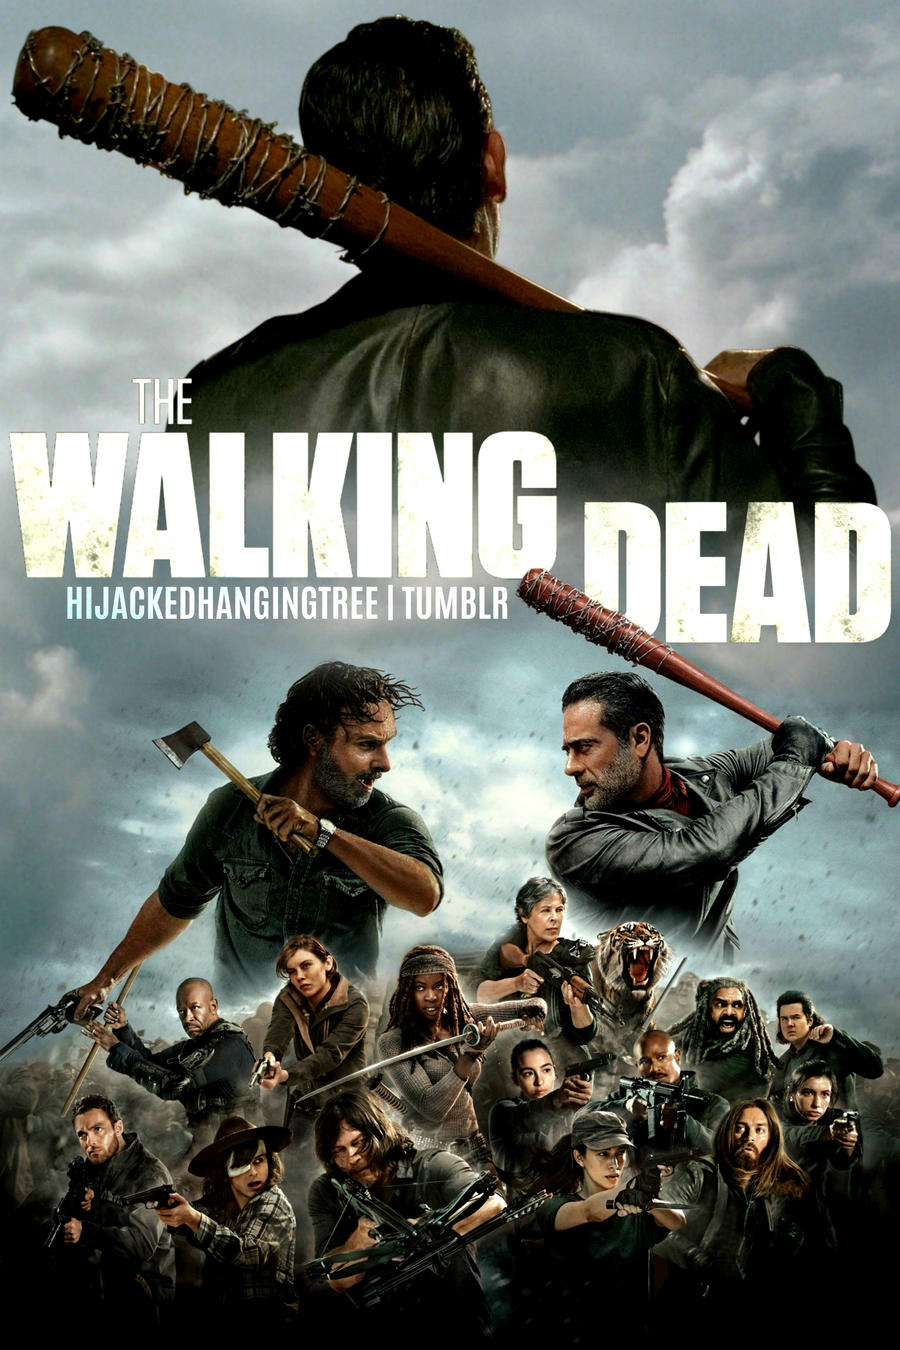 The Walking Dead Season 8 Fan Made Poster By Revolutionmockingjay On Deviantart